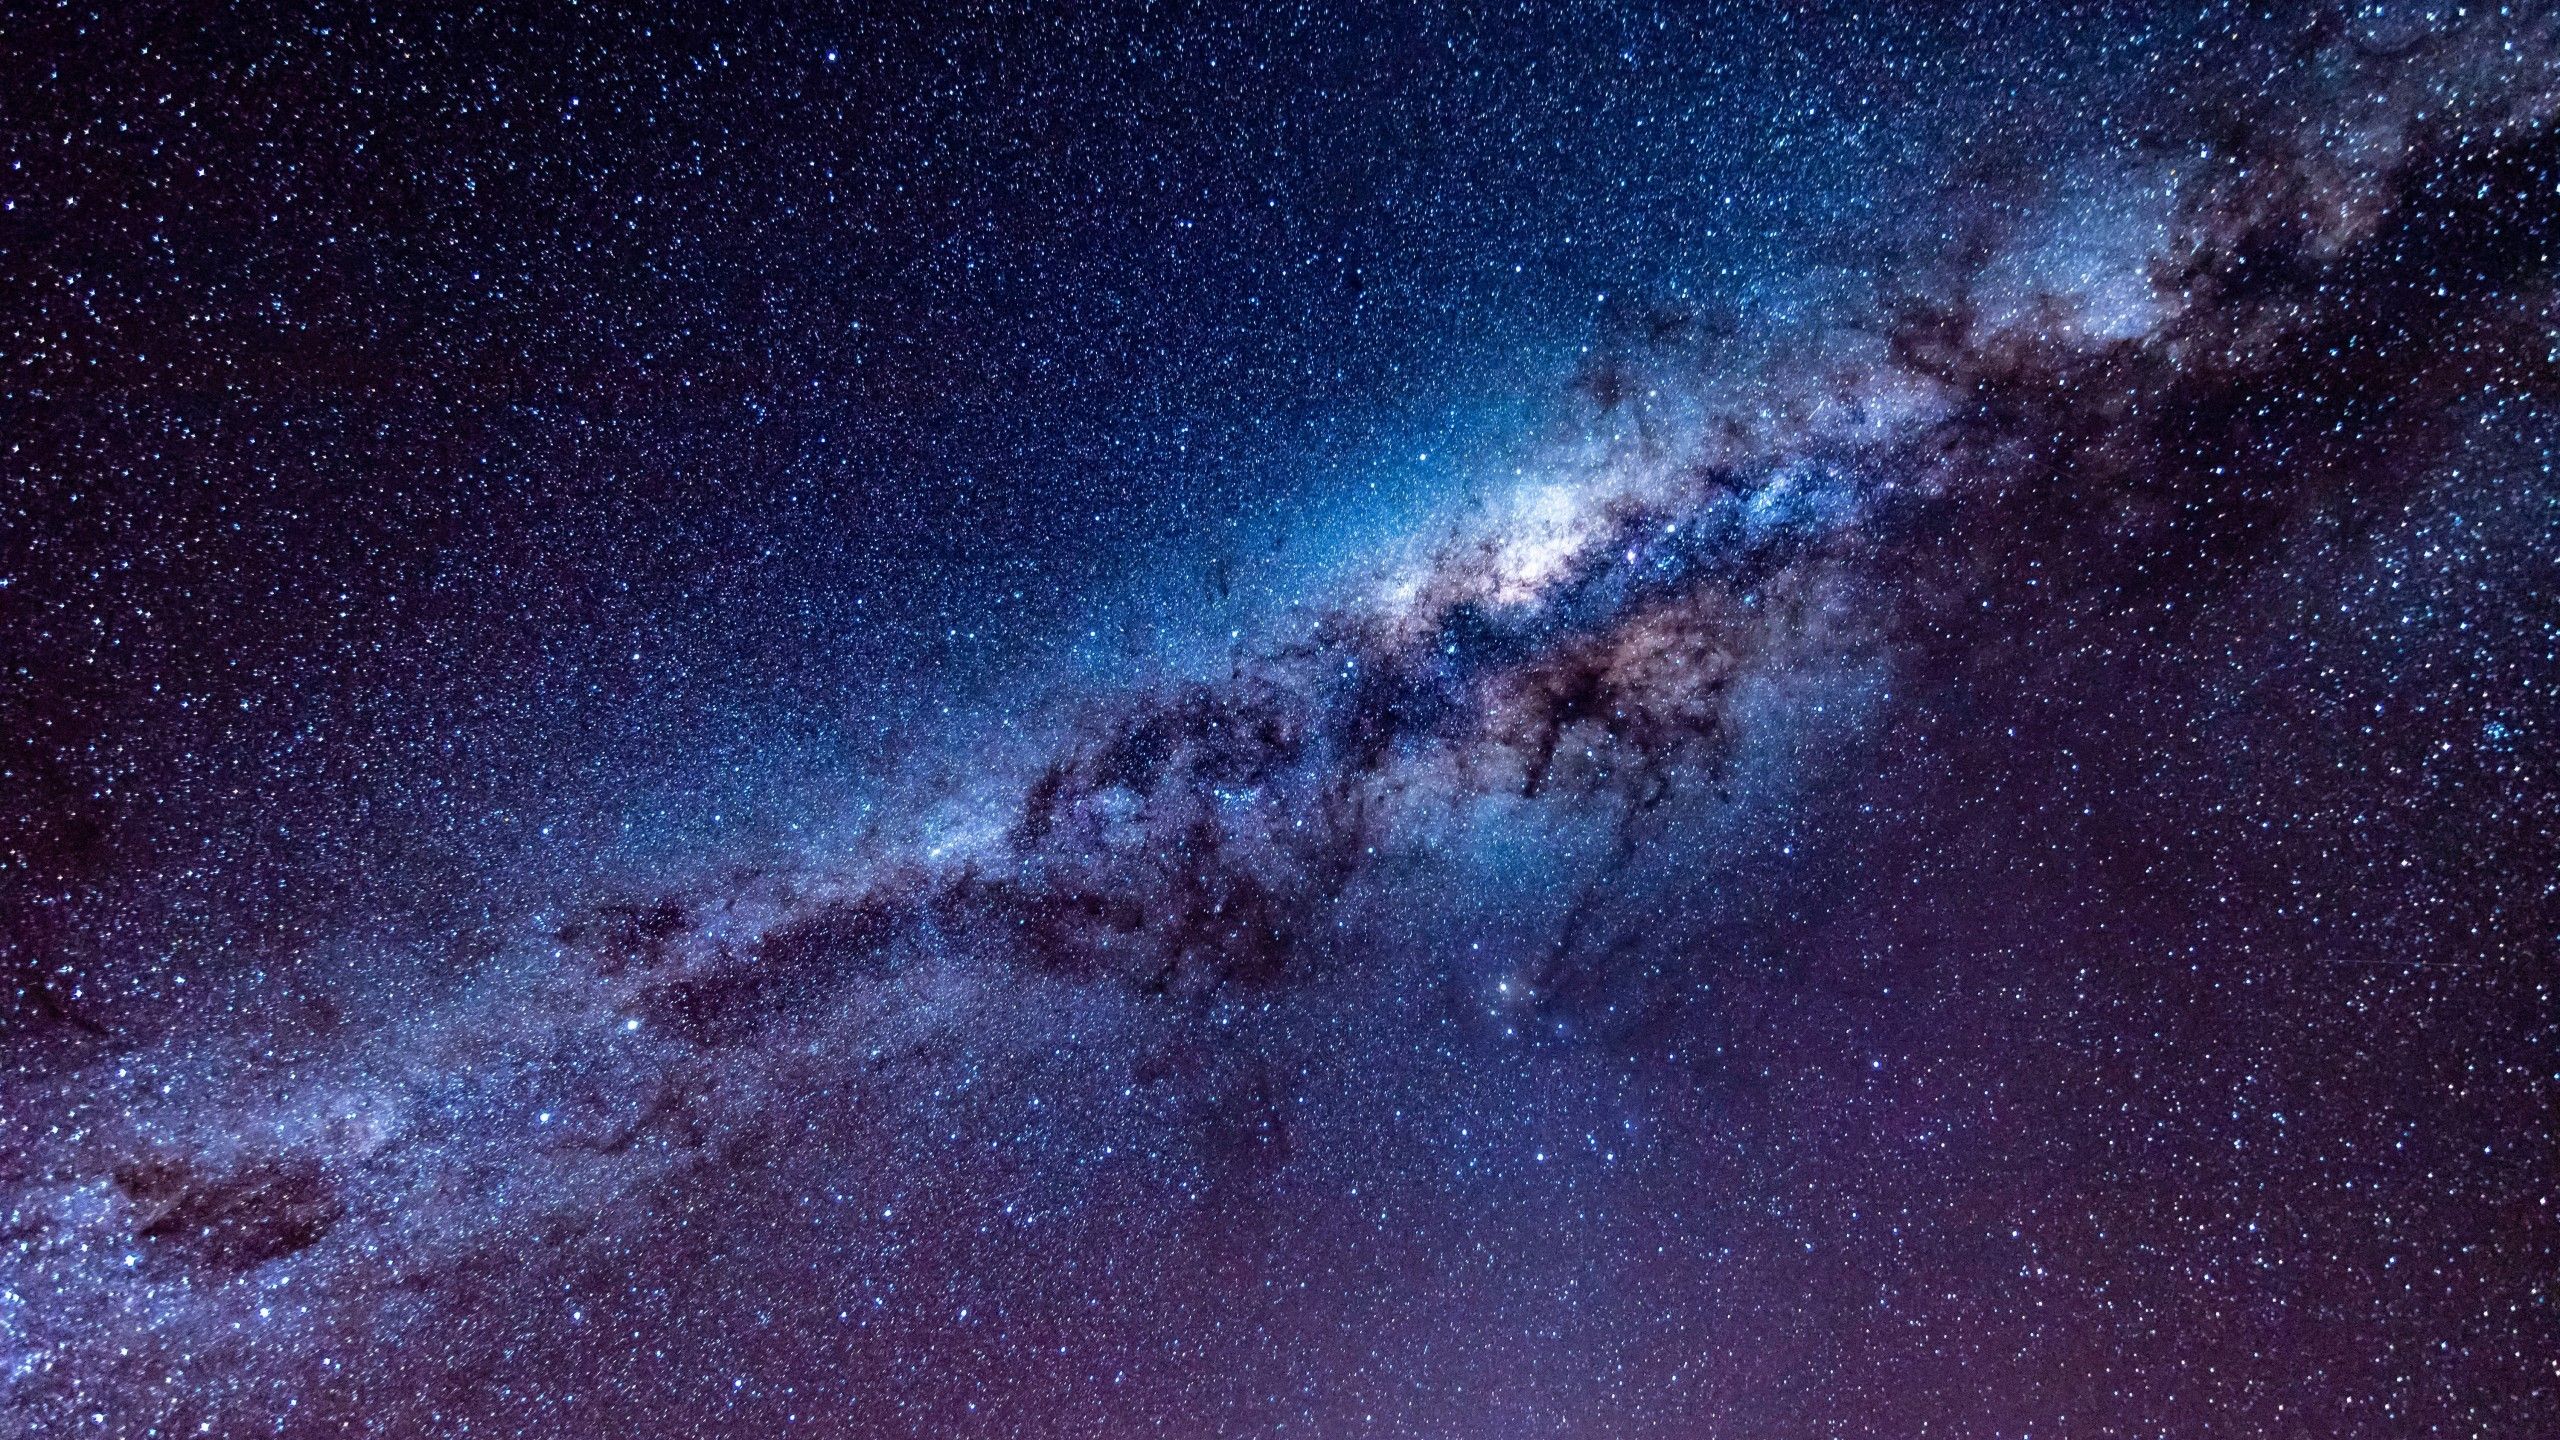 Hình nền với chủ đề sao trời sẽ mở ra một không gian riêng tư cho bạn để thưởng thức và cảm nhận vẻ đẹp của vũ trụ. Những hình ảnh hoàng đạo lộng lẫy và thiên hà rực rỡ sẽ làm cho bạn say đắm và khao khát khám phá hơn nữa.